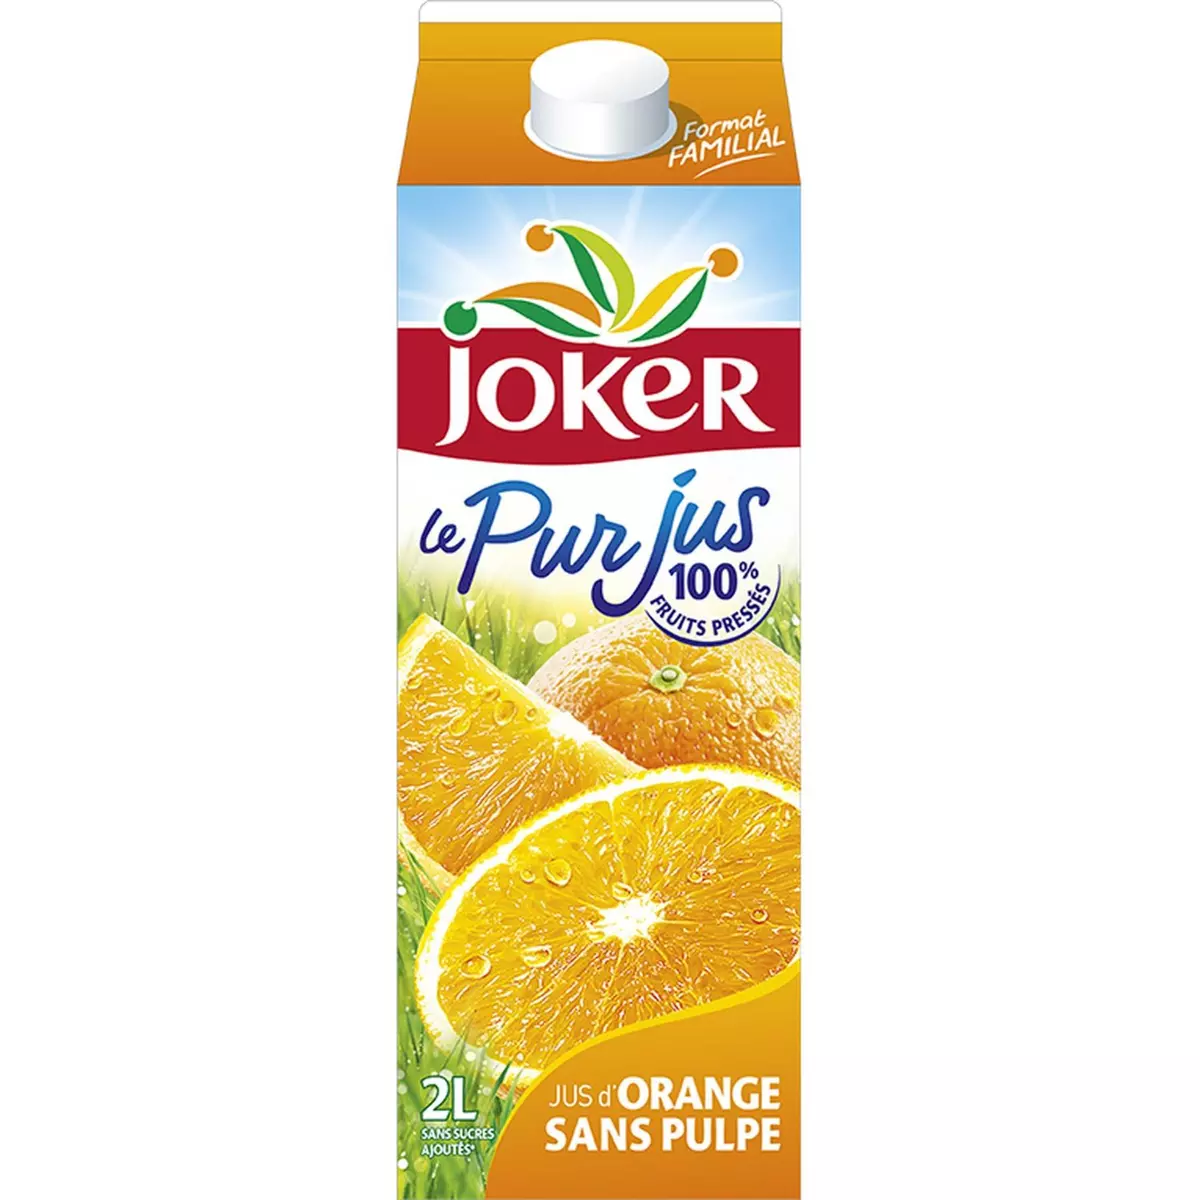 JOKER Pur jus d'orange sans pulpe 2l